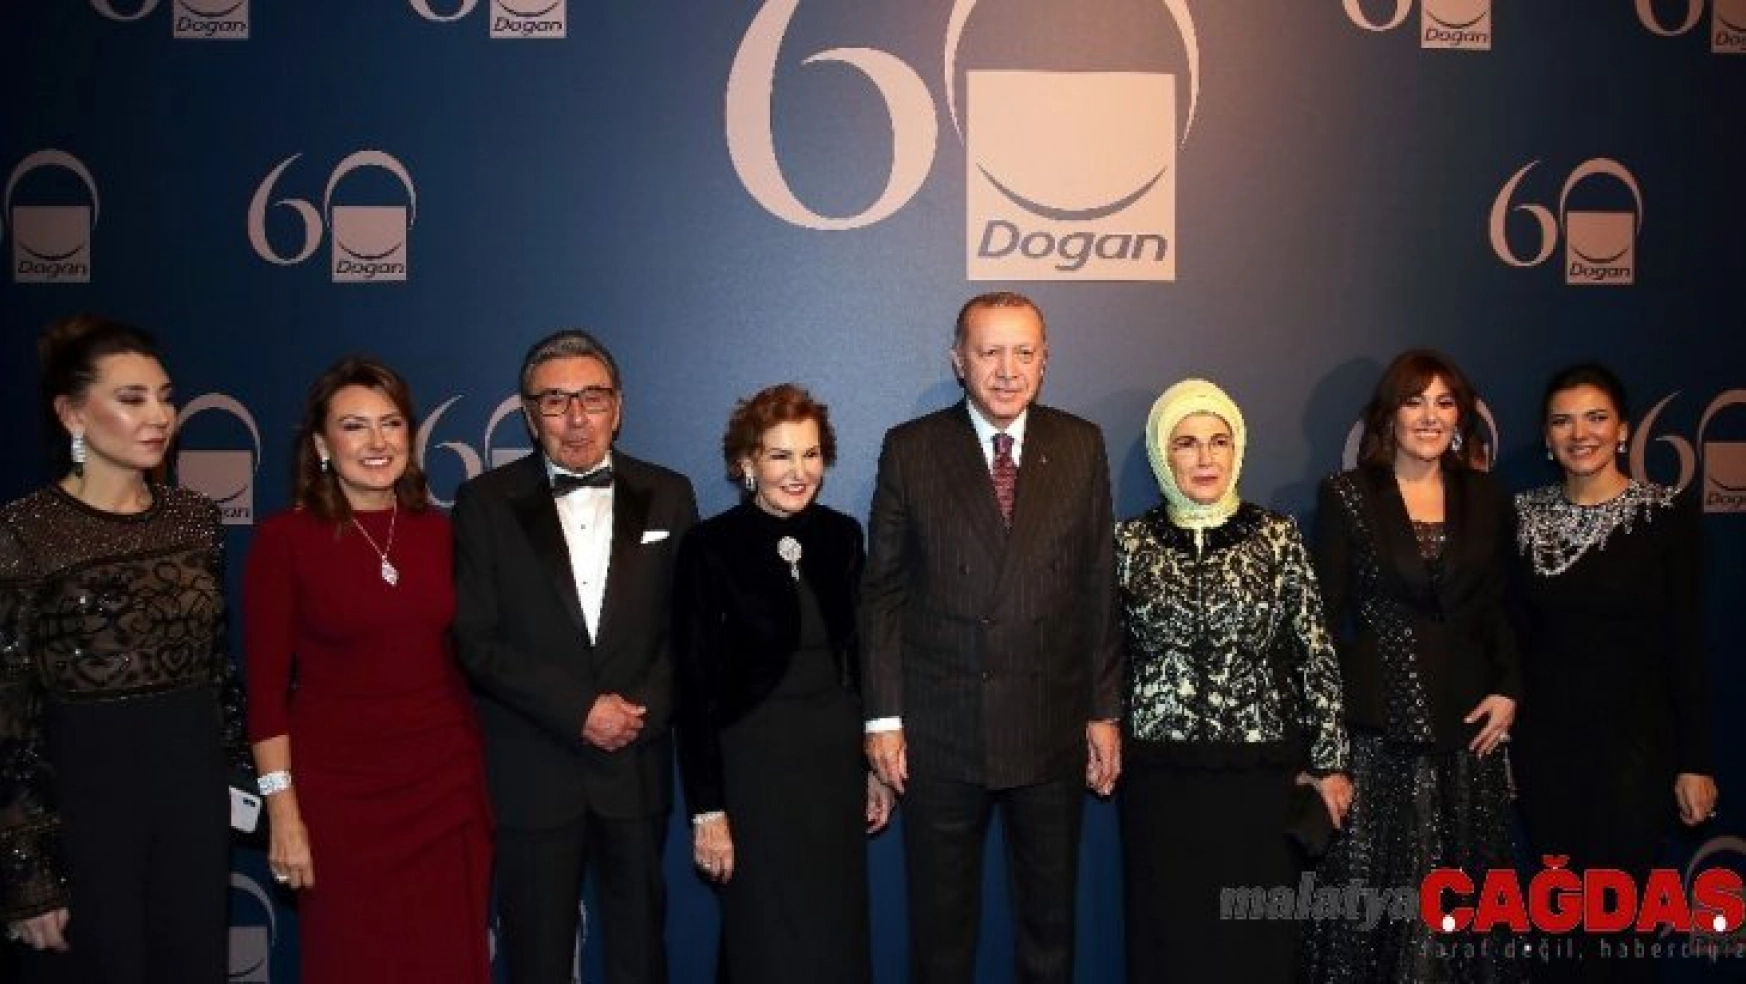 Cumhurbaşkanı Erdoğan, Doğan Grubu'nun 60. yıl kutlamalarına katıldı